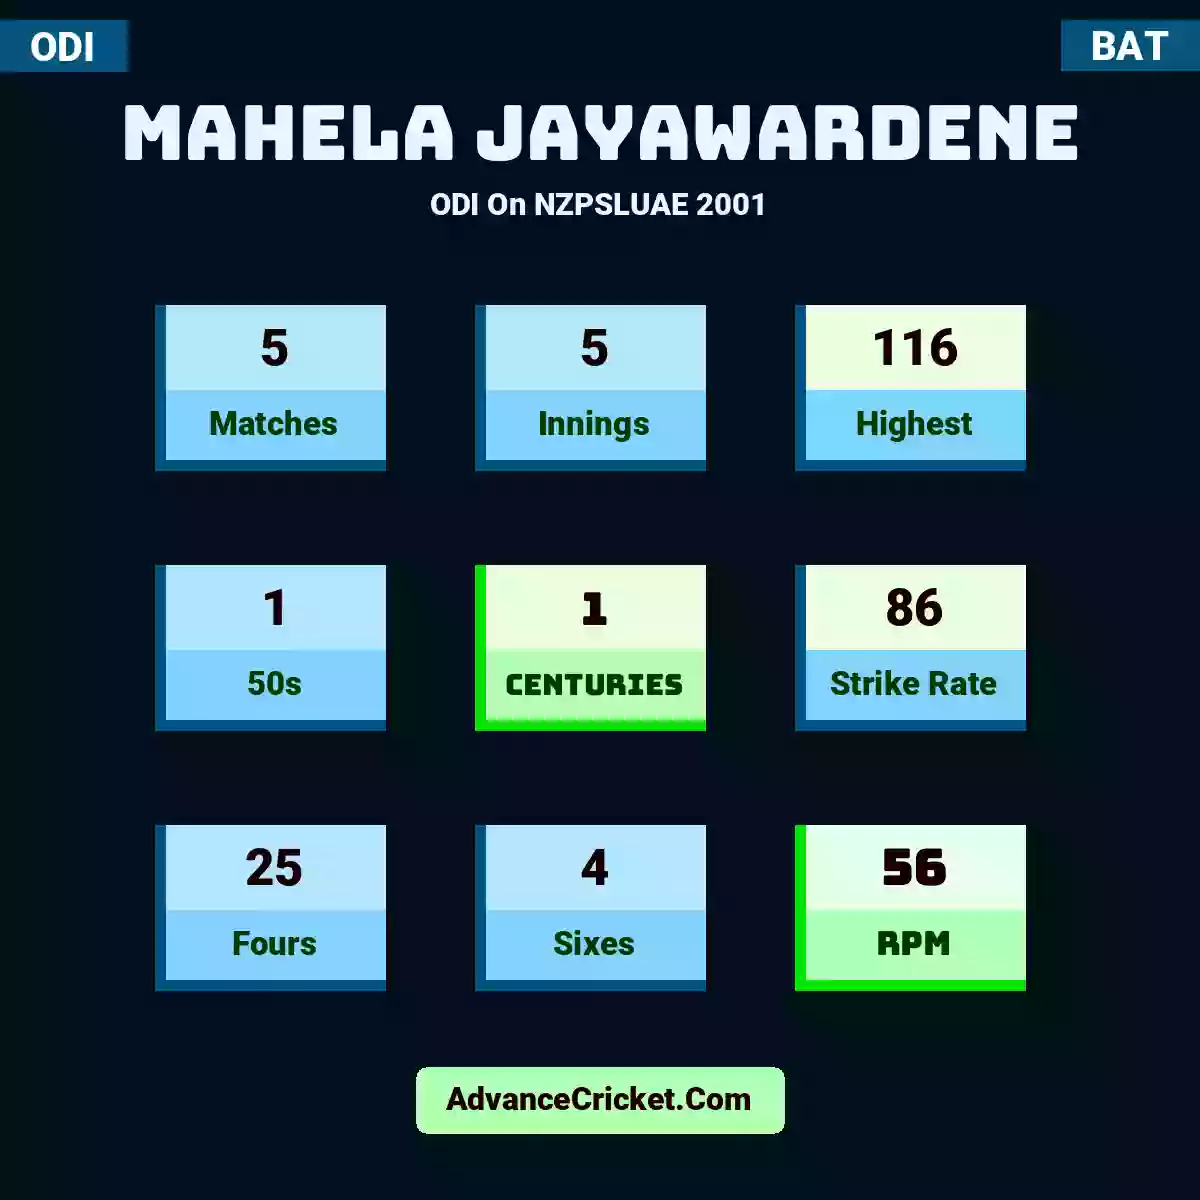 Mahela Jayawardene ODI  On NZPSLUAE 2001, Mahela Jayawardene played 5 matches, scored 116 runs as highest, 1 half-centuries, and 1 centuries, with a strike rate of 86. M.Jayawardene hit 25 fours and 4 sixes, with an RPM of 56.